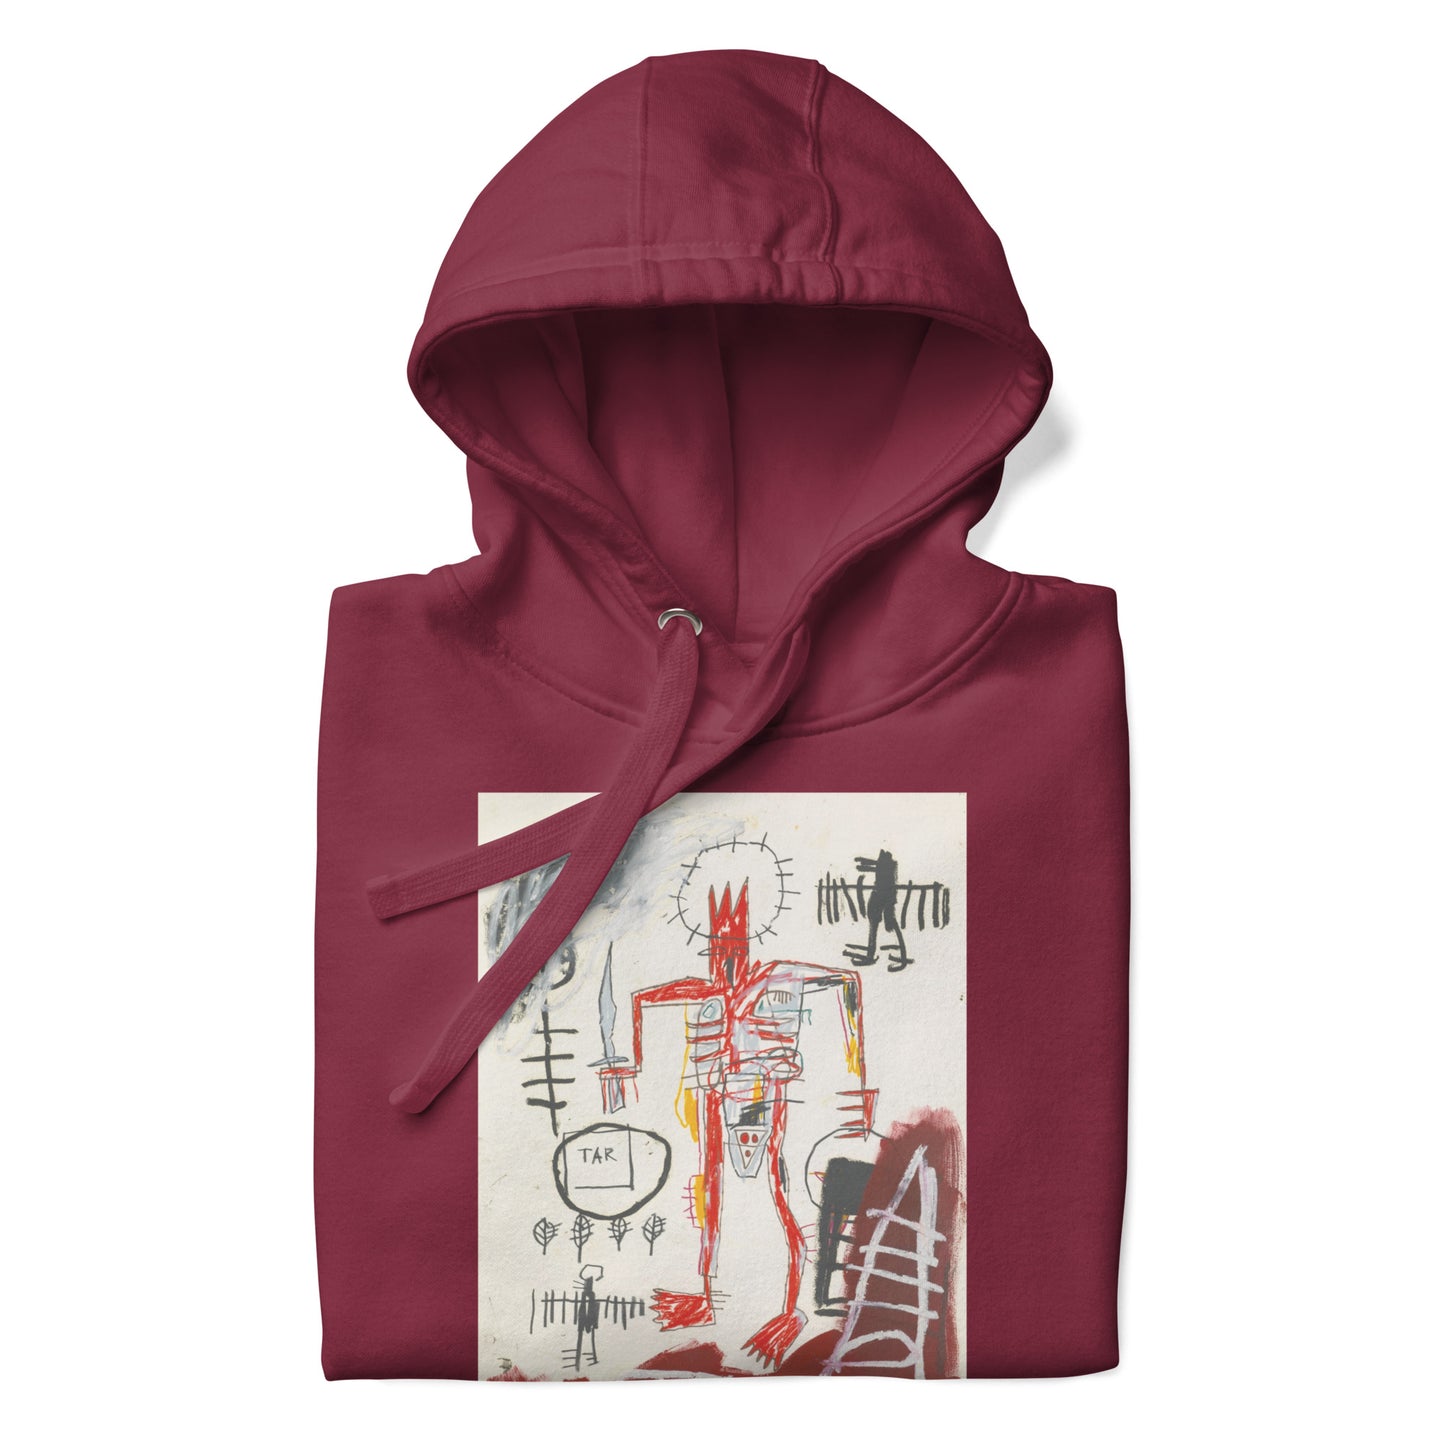 Jean-Michel Basquiat "Untitled" Artwork Printed Premium Streetwear Sweatshirt Hoodie Burgundy Red